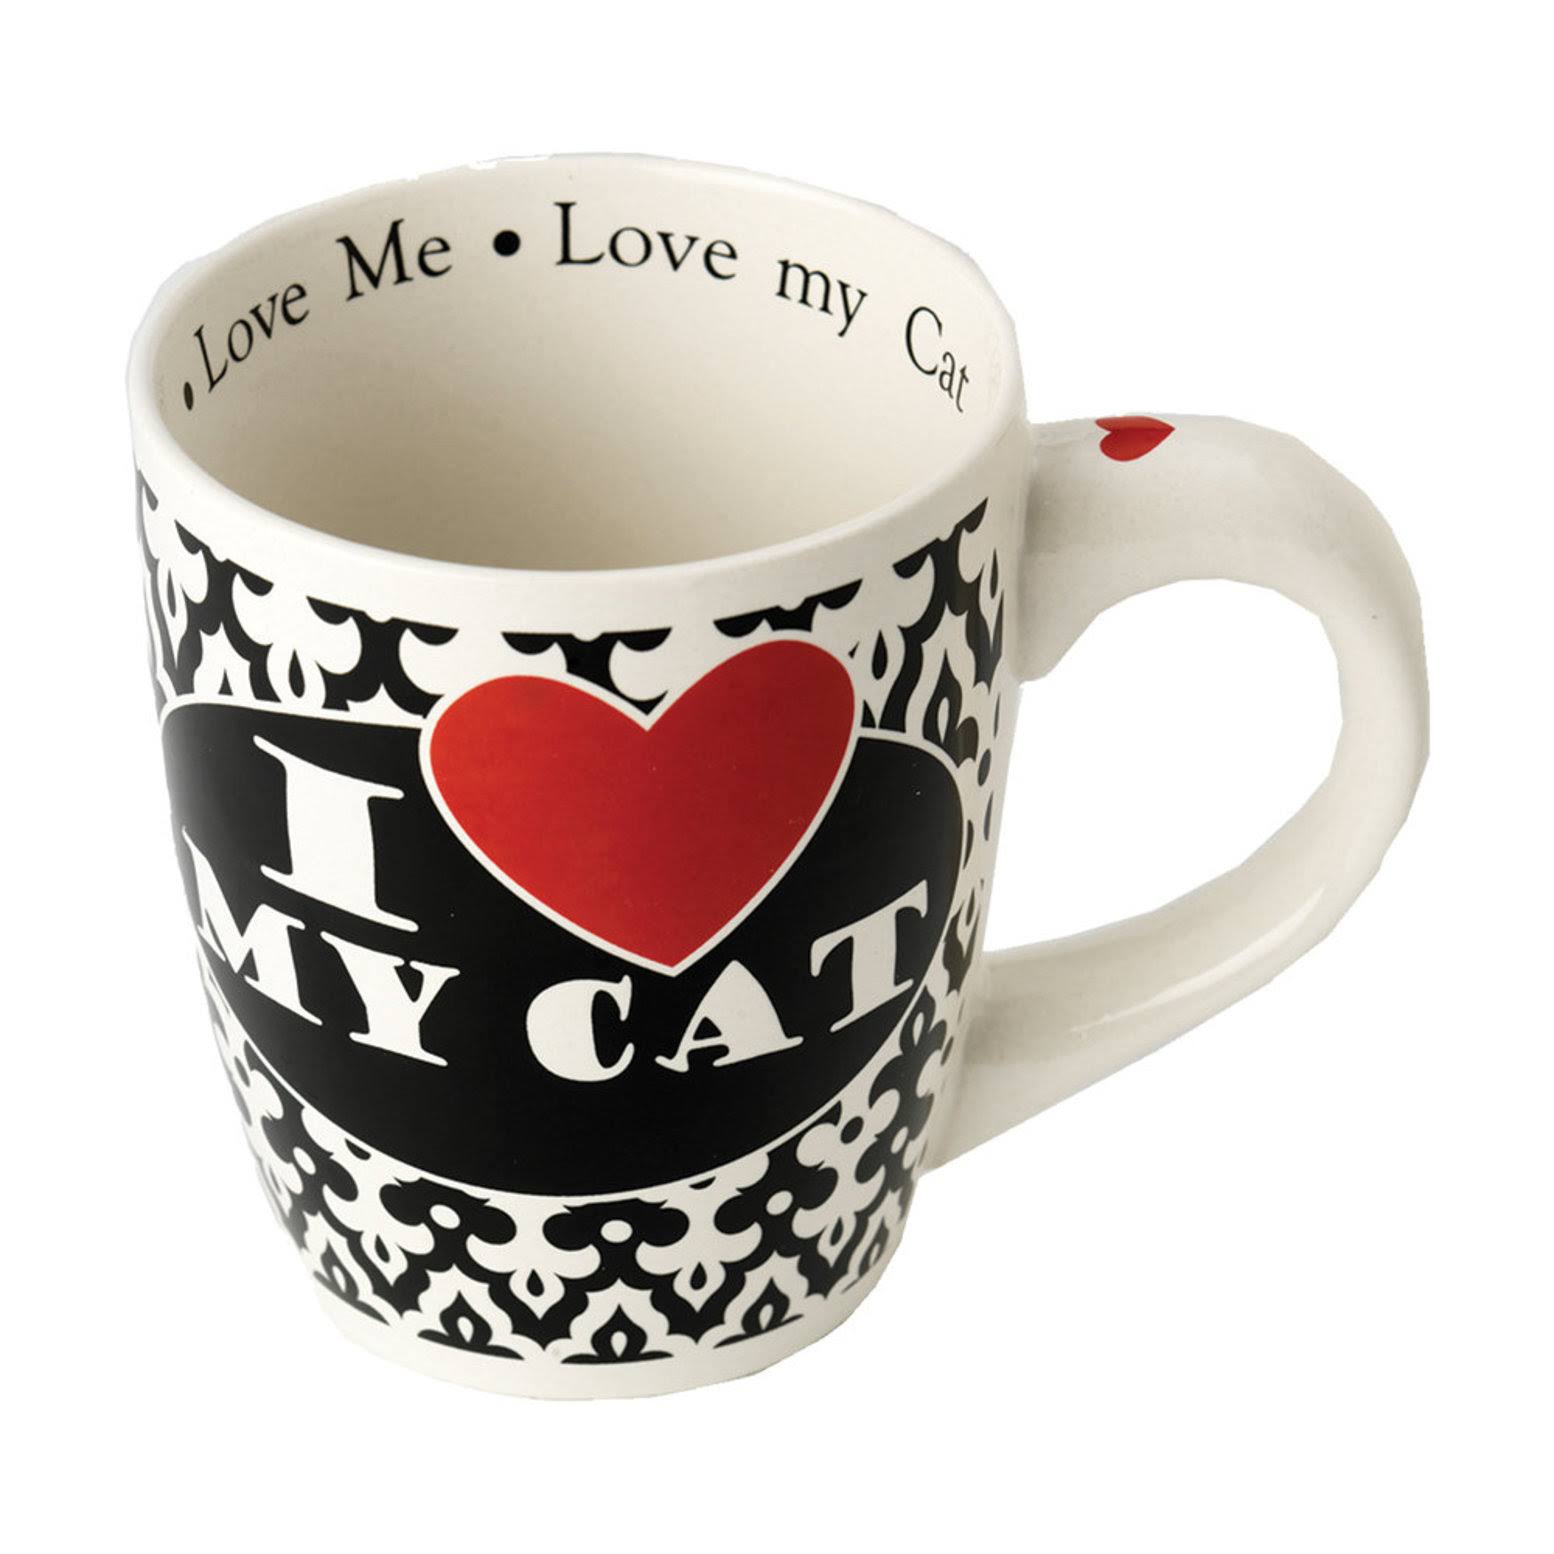 I Love My Cat Jumbo Mug - 28 oz. Mug